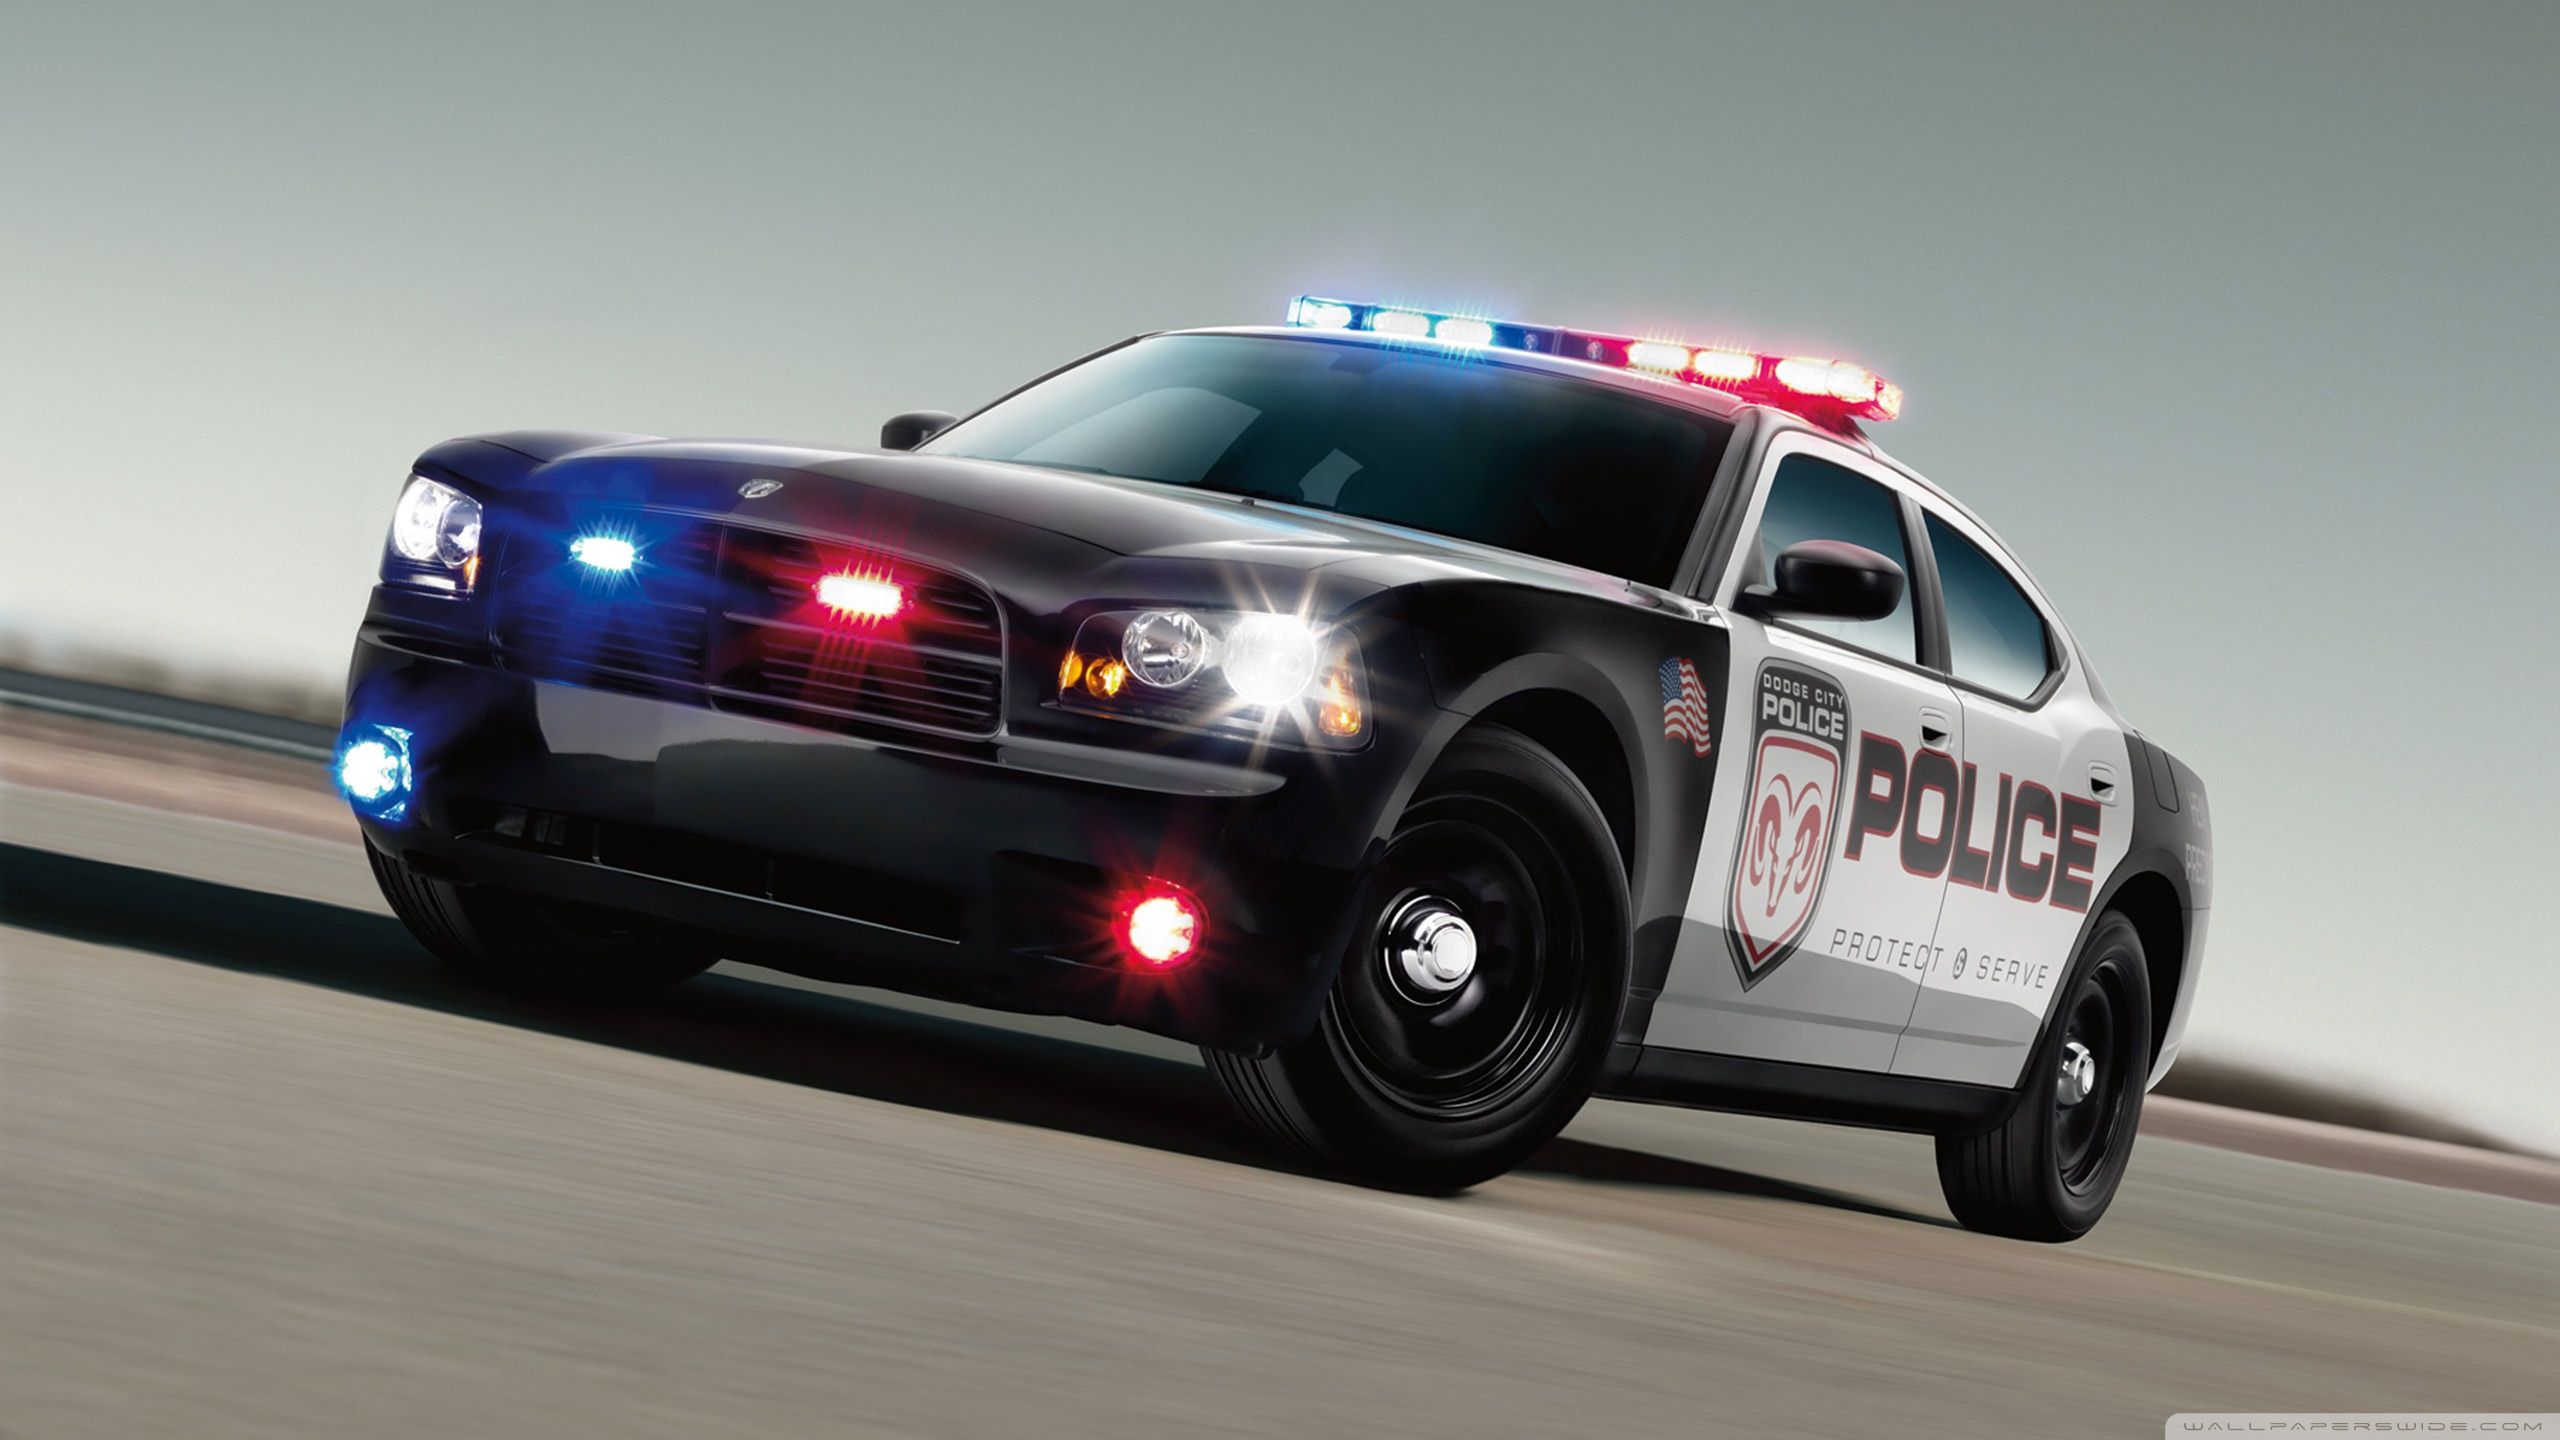 Dodge Police Car Ultra HD Desktop Background Wallpaper for 4K UHD